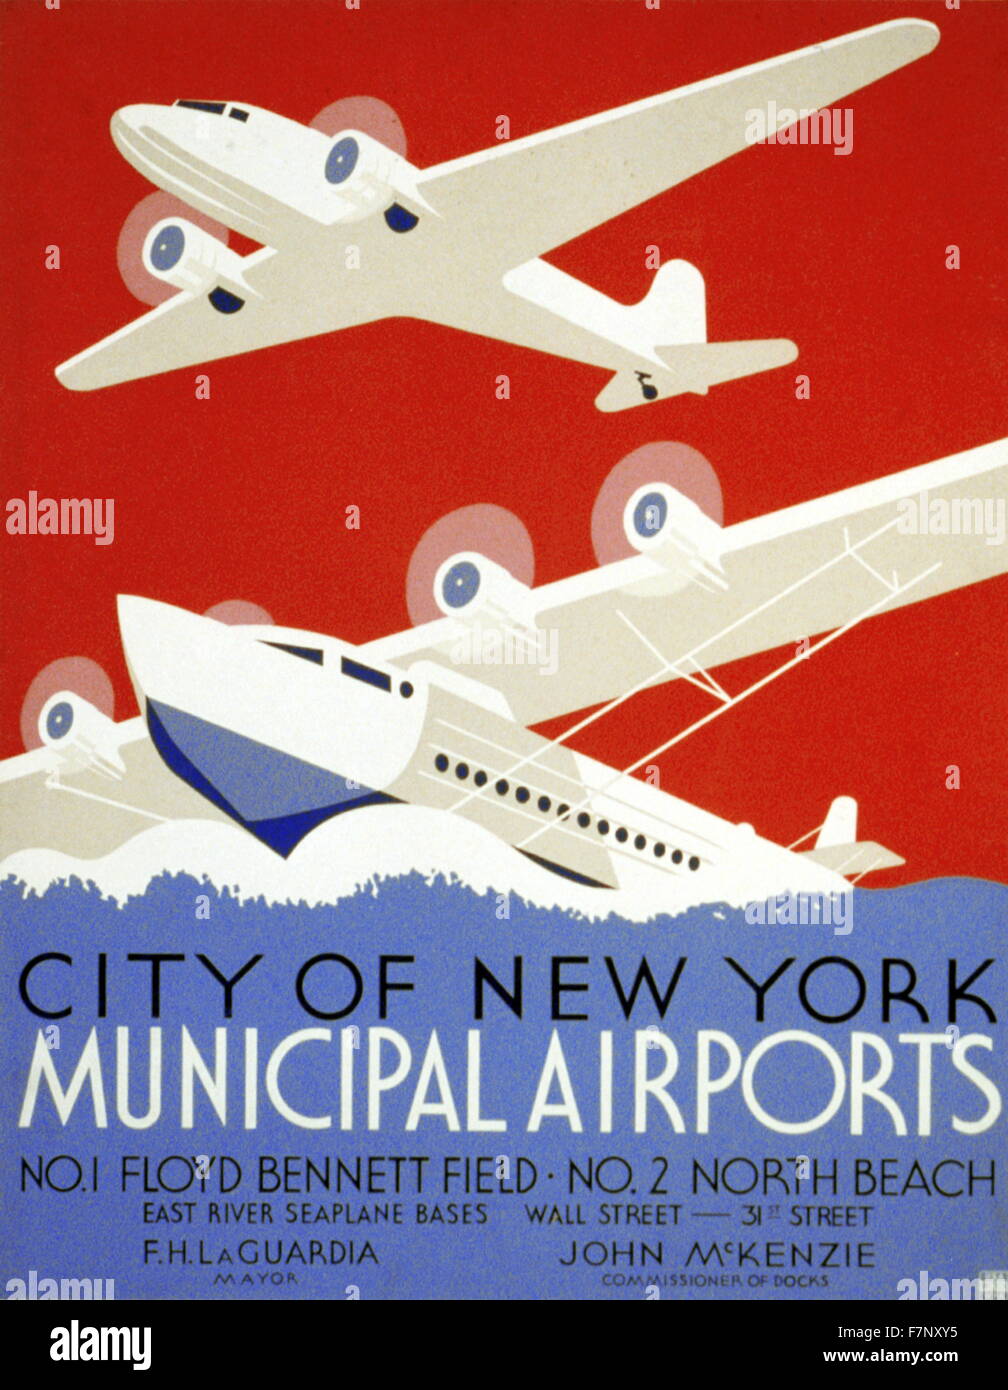 Cartel para la promoción de Nueva York aeropuertos municipales 1937 Foto de stock